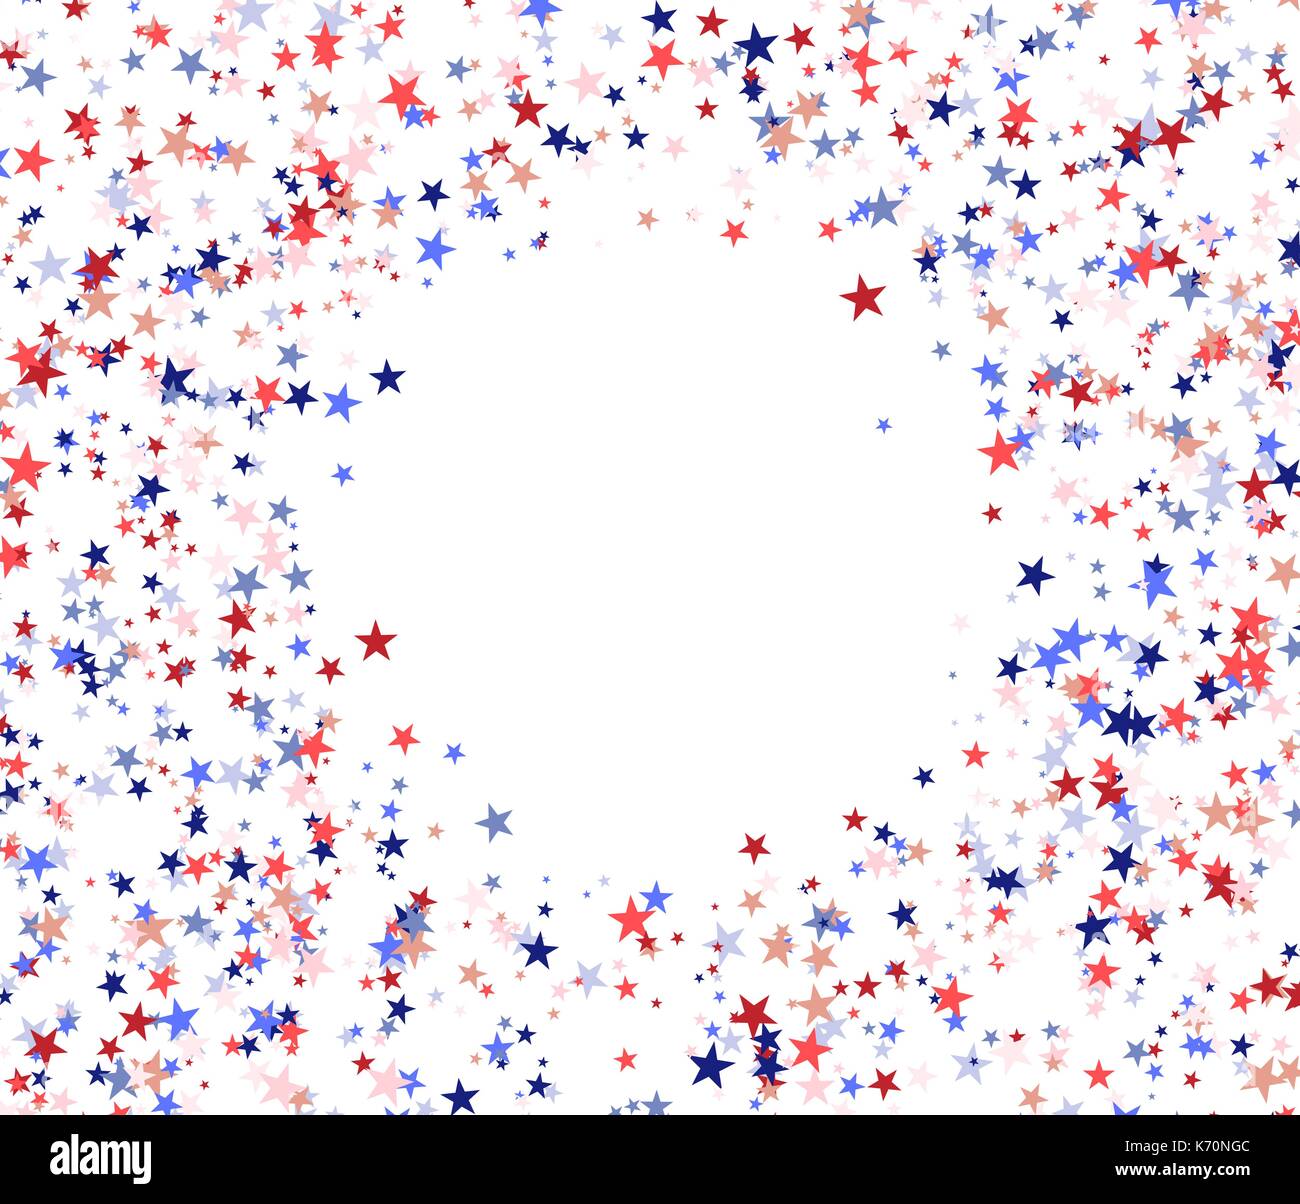 Rote, blaue und weiße Sterne mit leeren Kreis in der Mitte, der nationalen USA-Flagge Farben. Vector Illustration auf weißem Hintergrund Stock Vektor